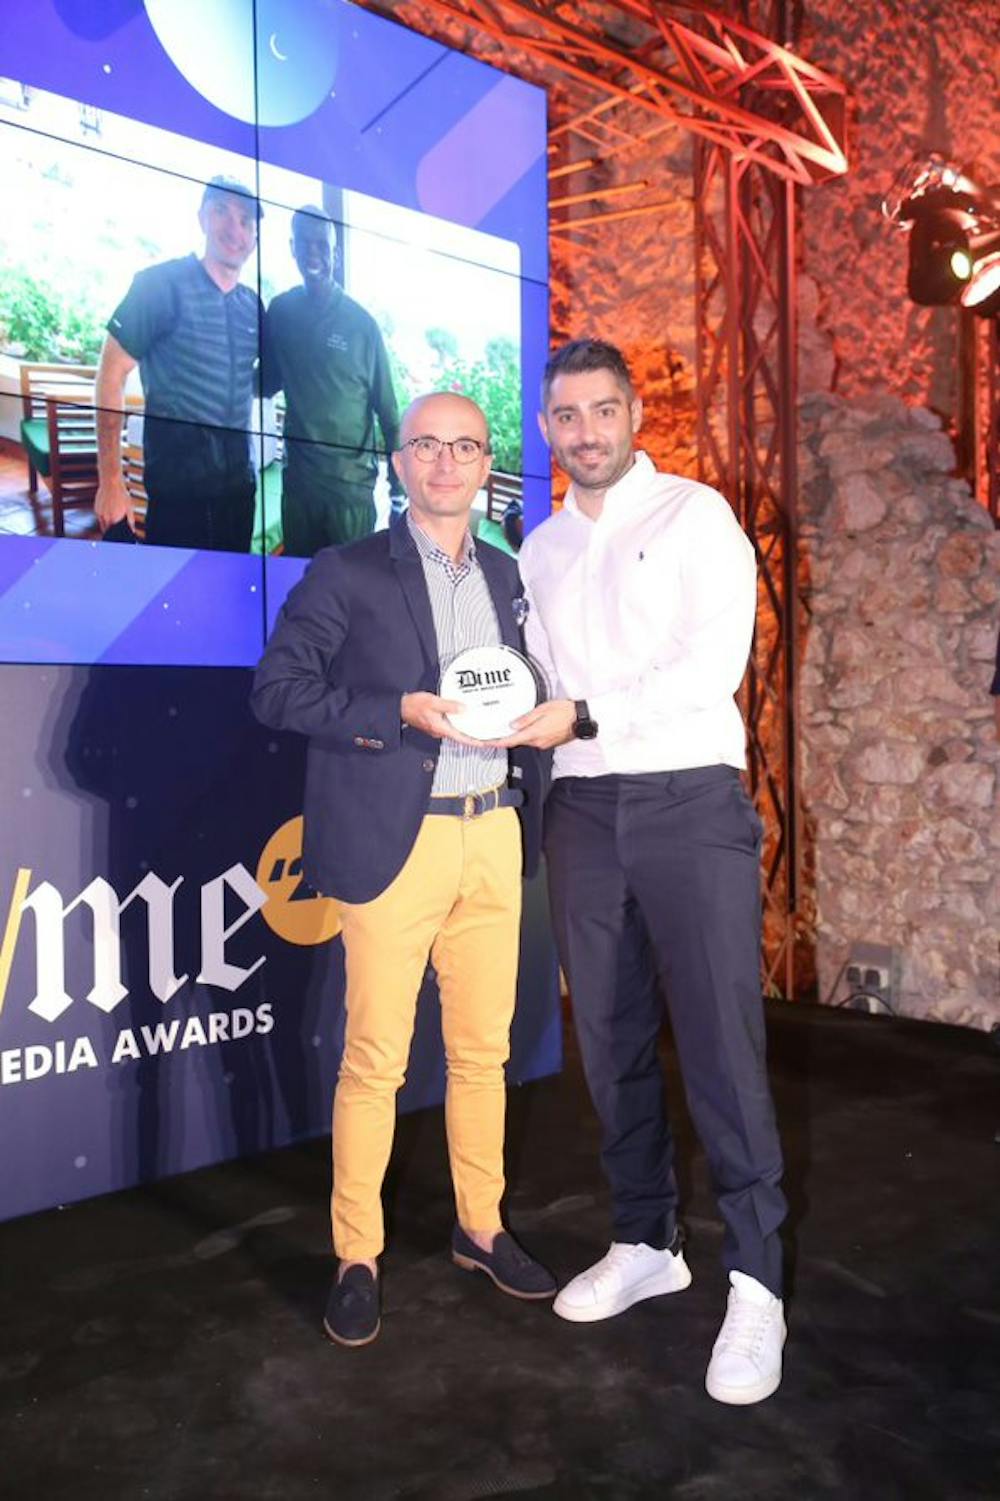 Κορυφαία διάκριση για το Runbeat και την αποκλειστική συνέντευξη στον Eliud Kipchoge στα Digital Media Awards runbeat.gr 